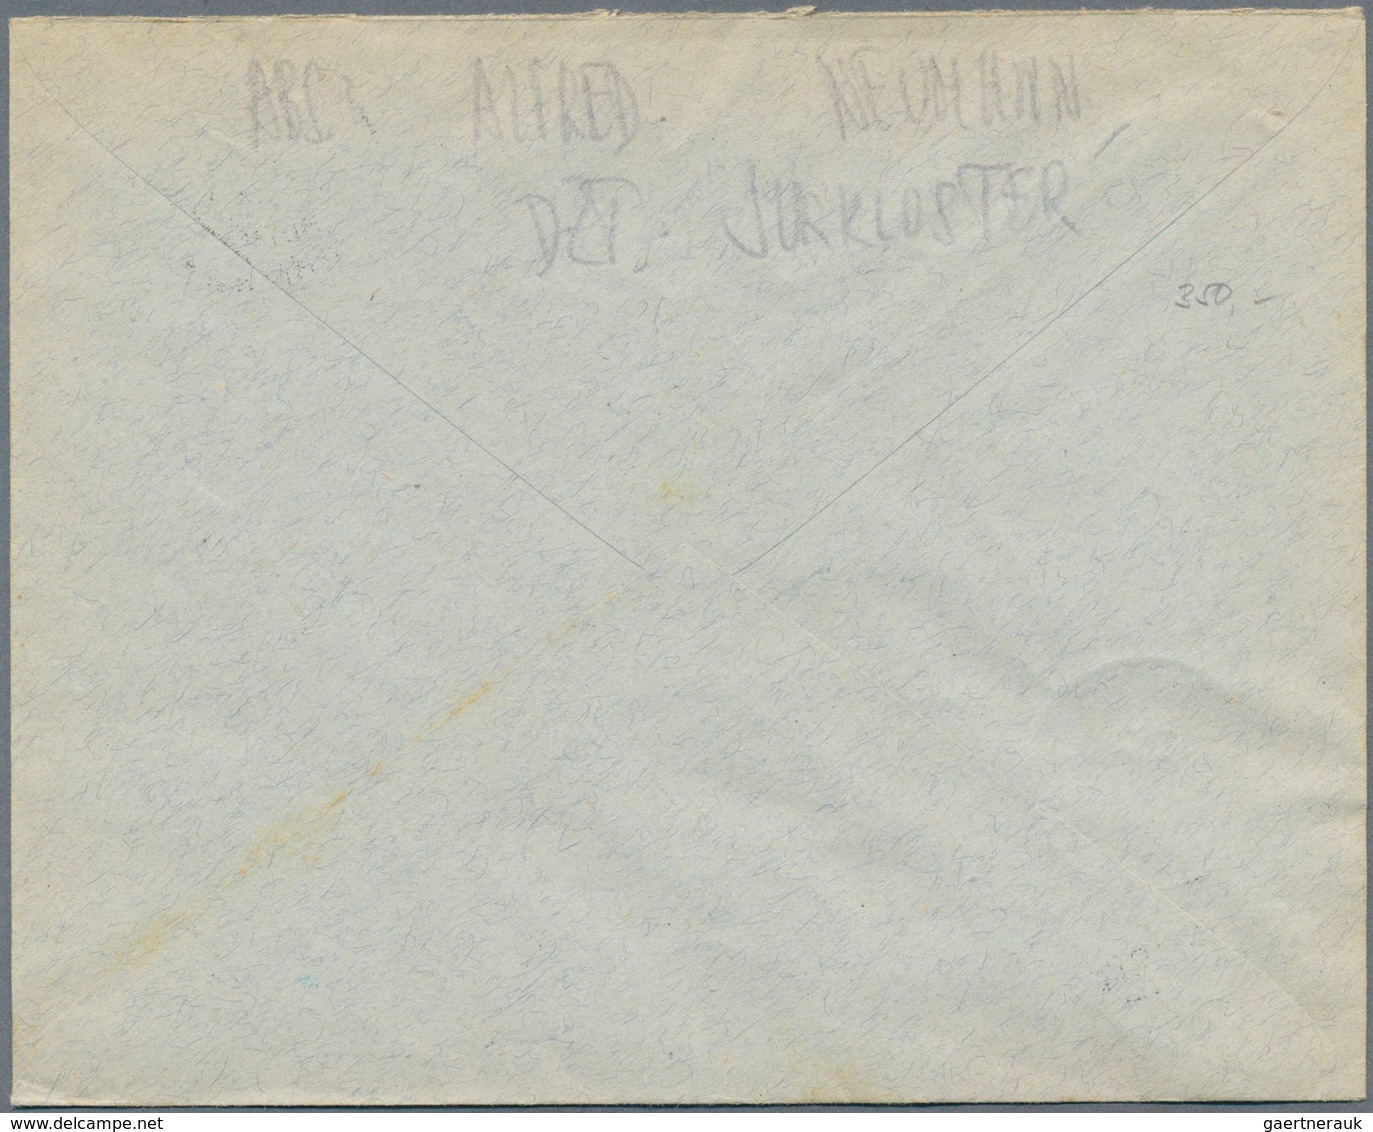 Österreich - Portomarken: 1917, 2 Unterfrankierte Briefe Mit NACHPORTO, 1x In Wien Mit 25 H Belegt U - Postage Due